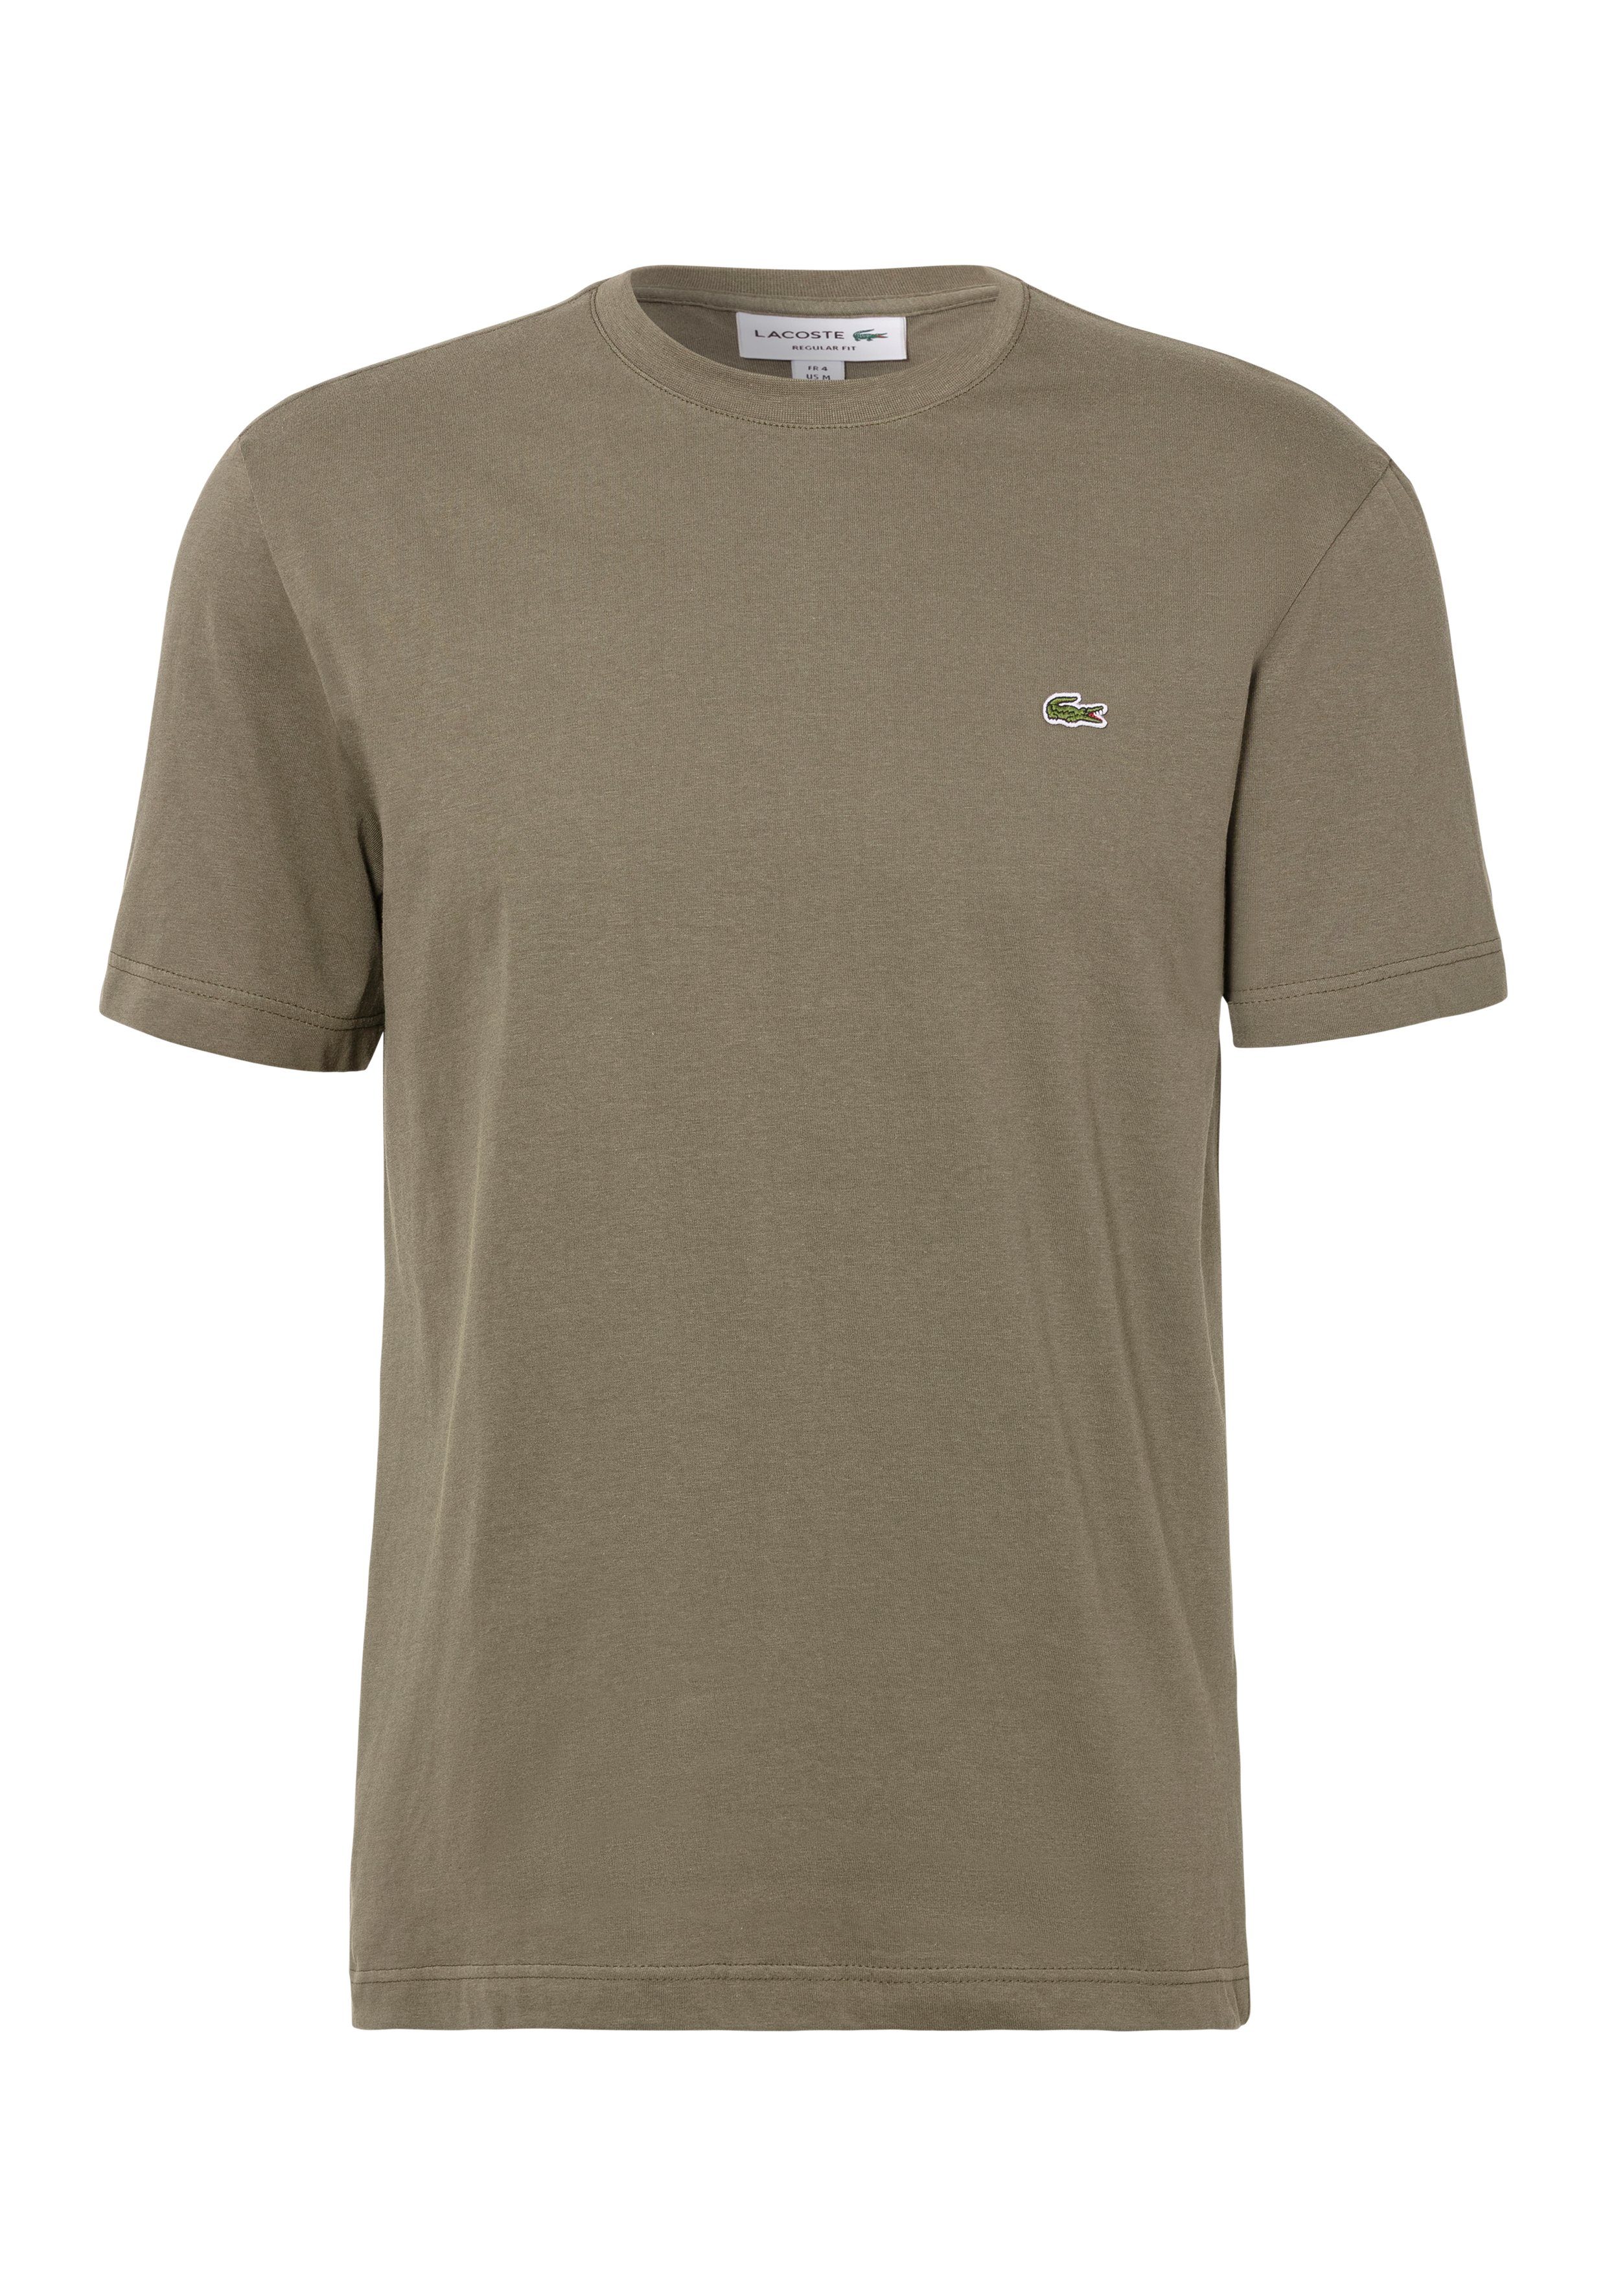 Rundhalsausschnitt T-Shirt (1-tlg) khaki mit Lacoste